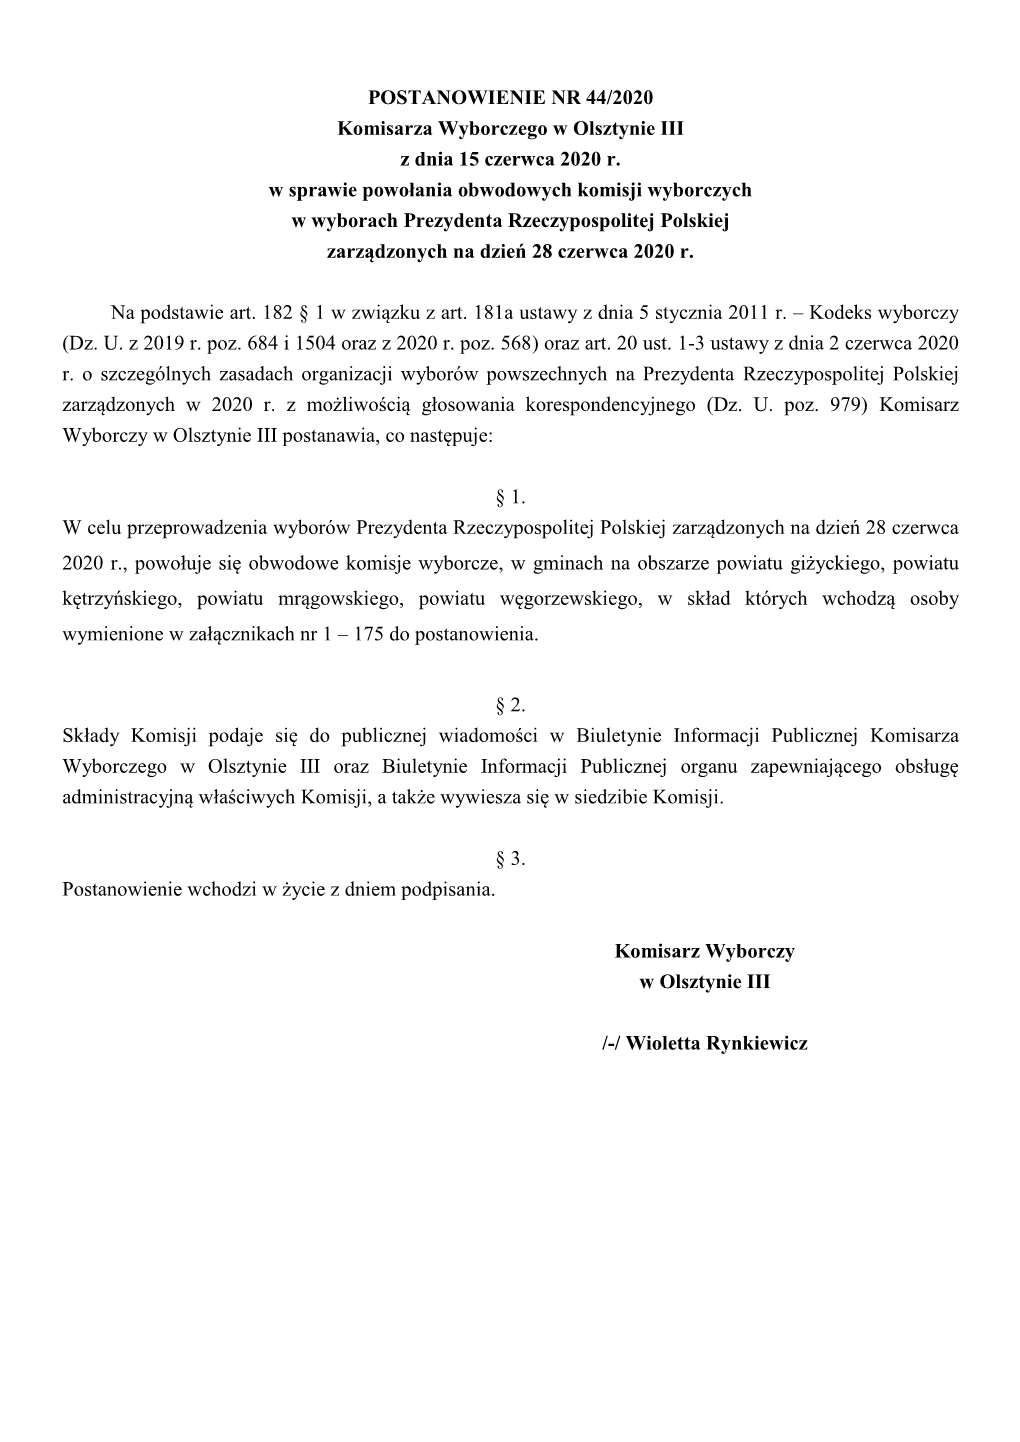 POSTANOWIENIE NR 44/2020 Komisarza Wyborczego W Olsztynie III Z Dnia 15 Czerwca 2020 R